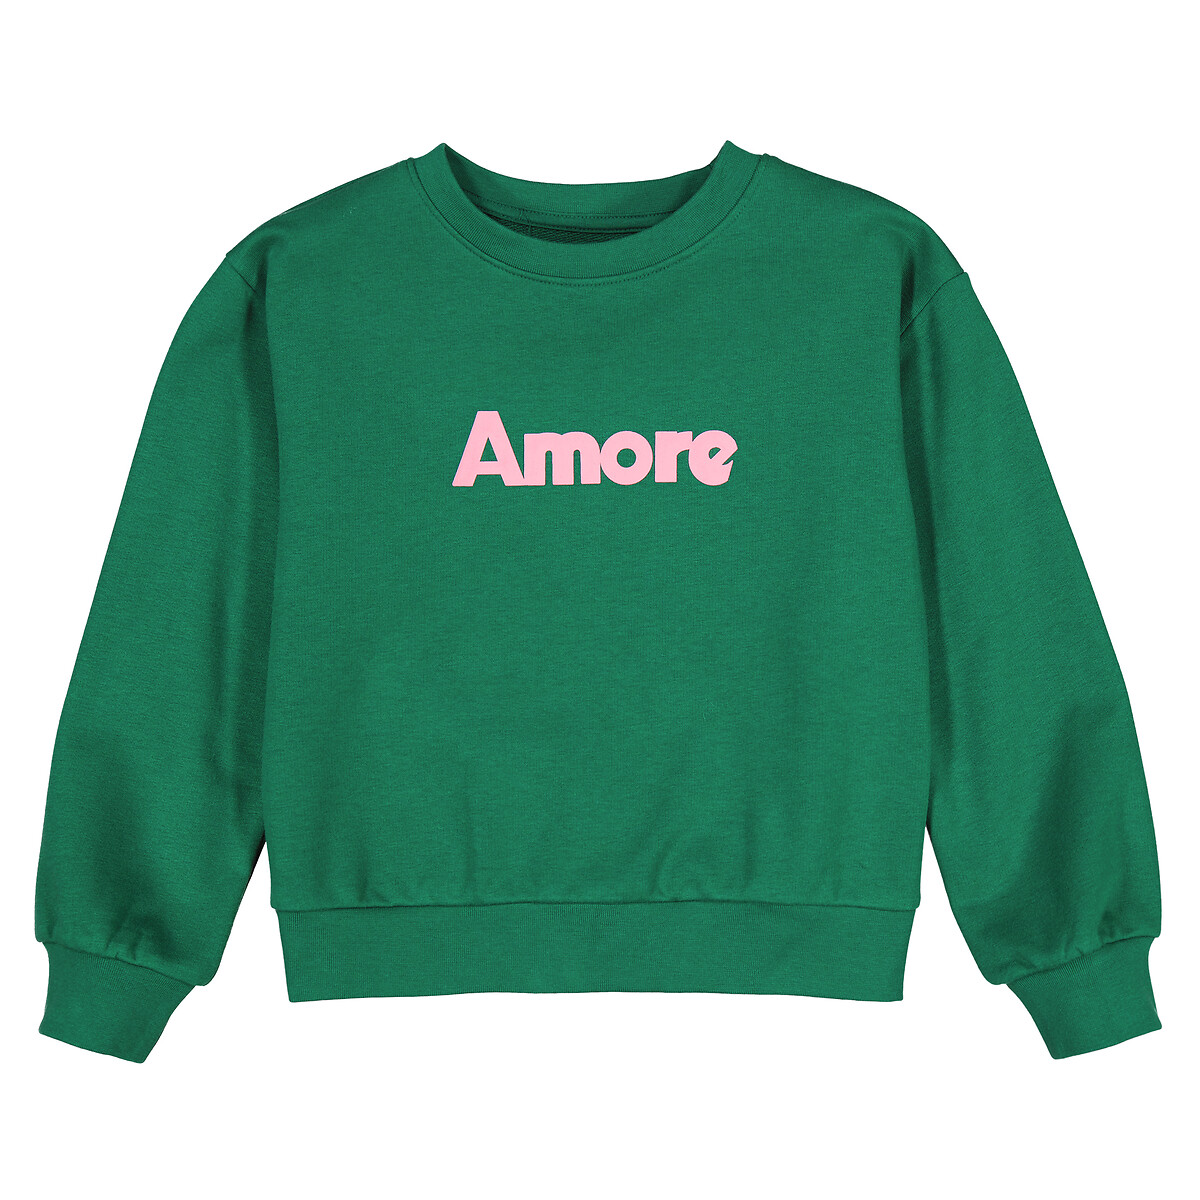 Свитшот с круглым вырезом из мольтона с надписью Amore  3 года - 94 см зеленый LaRedoute, размер 3 года - 94 см - фото 3